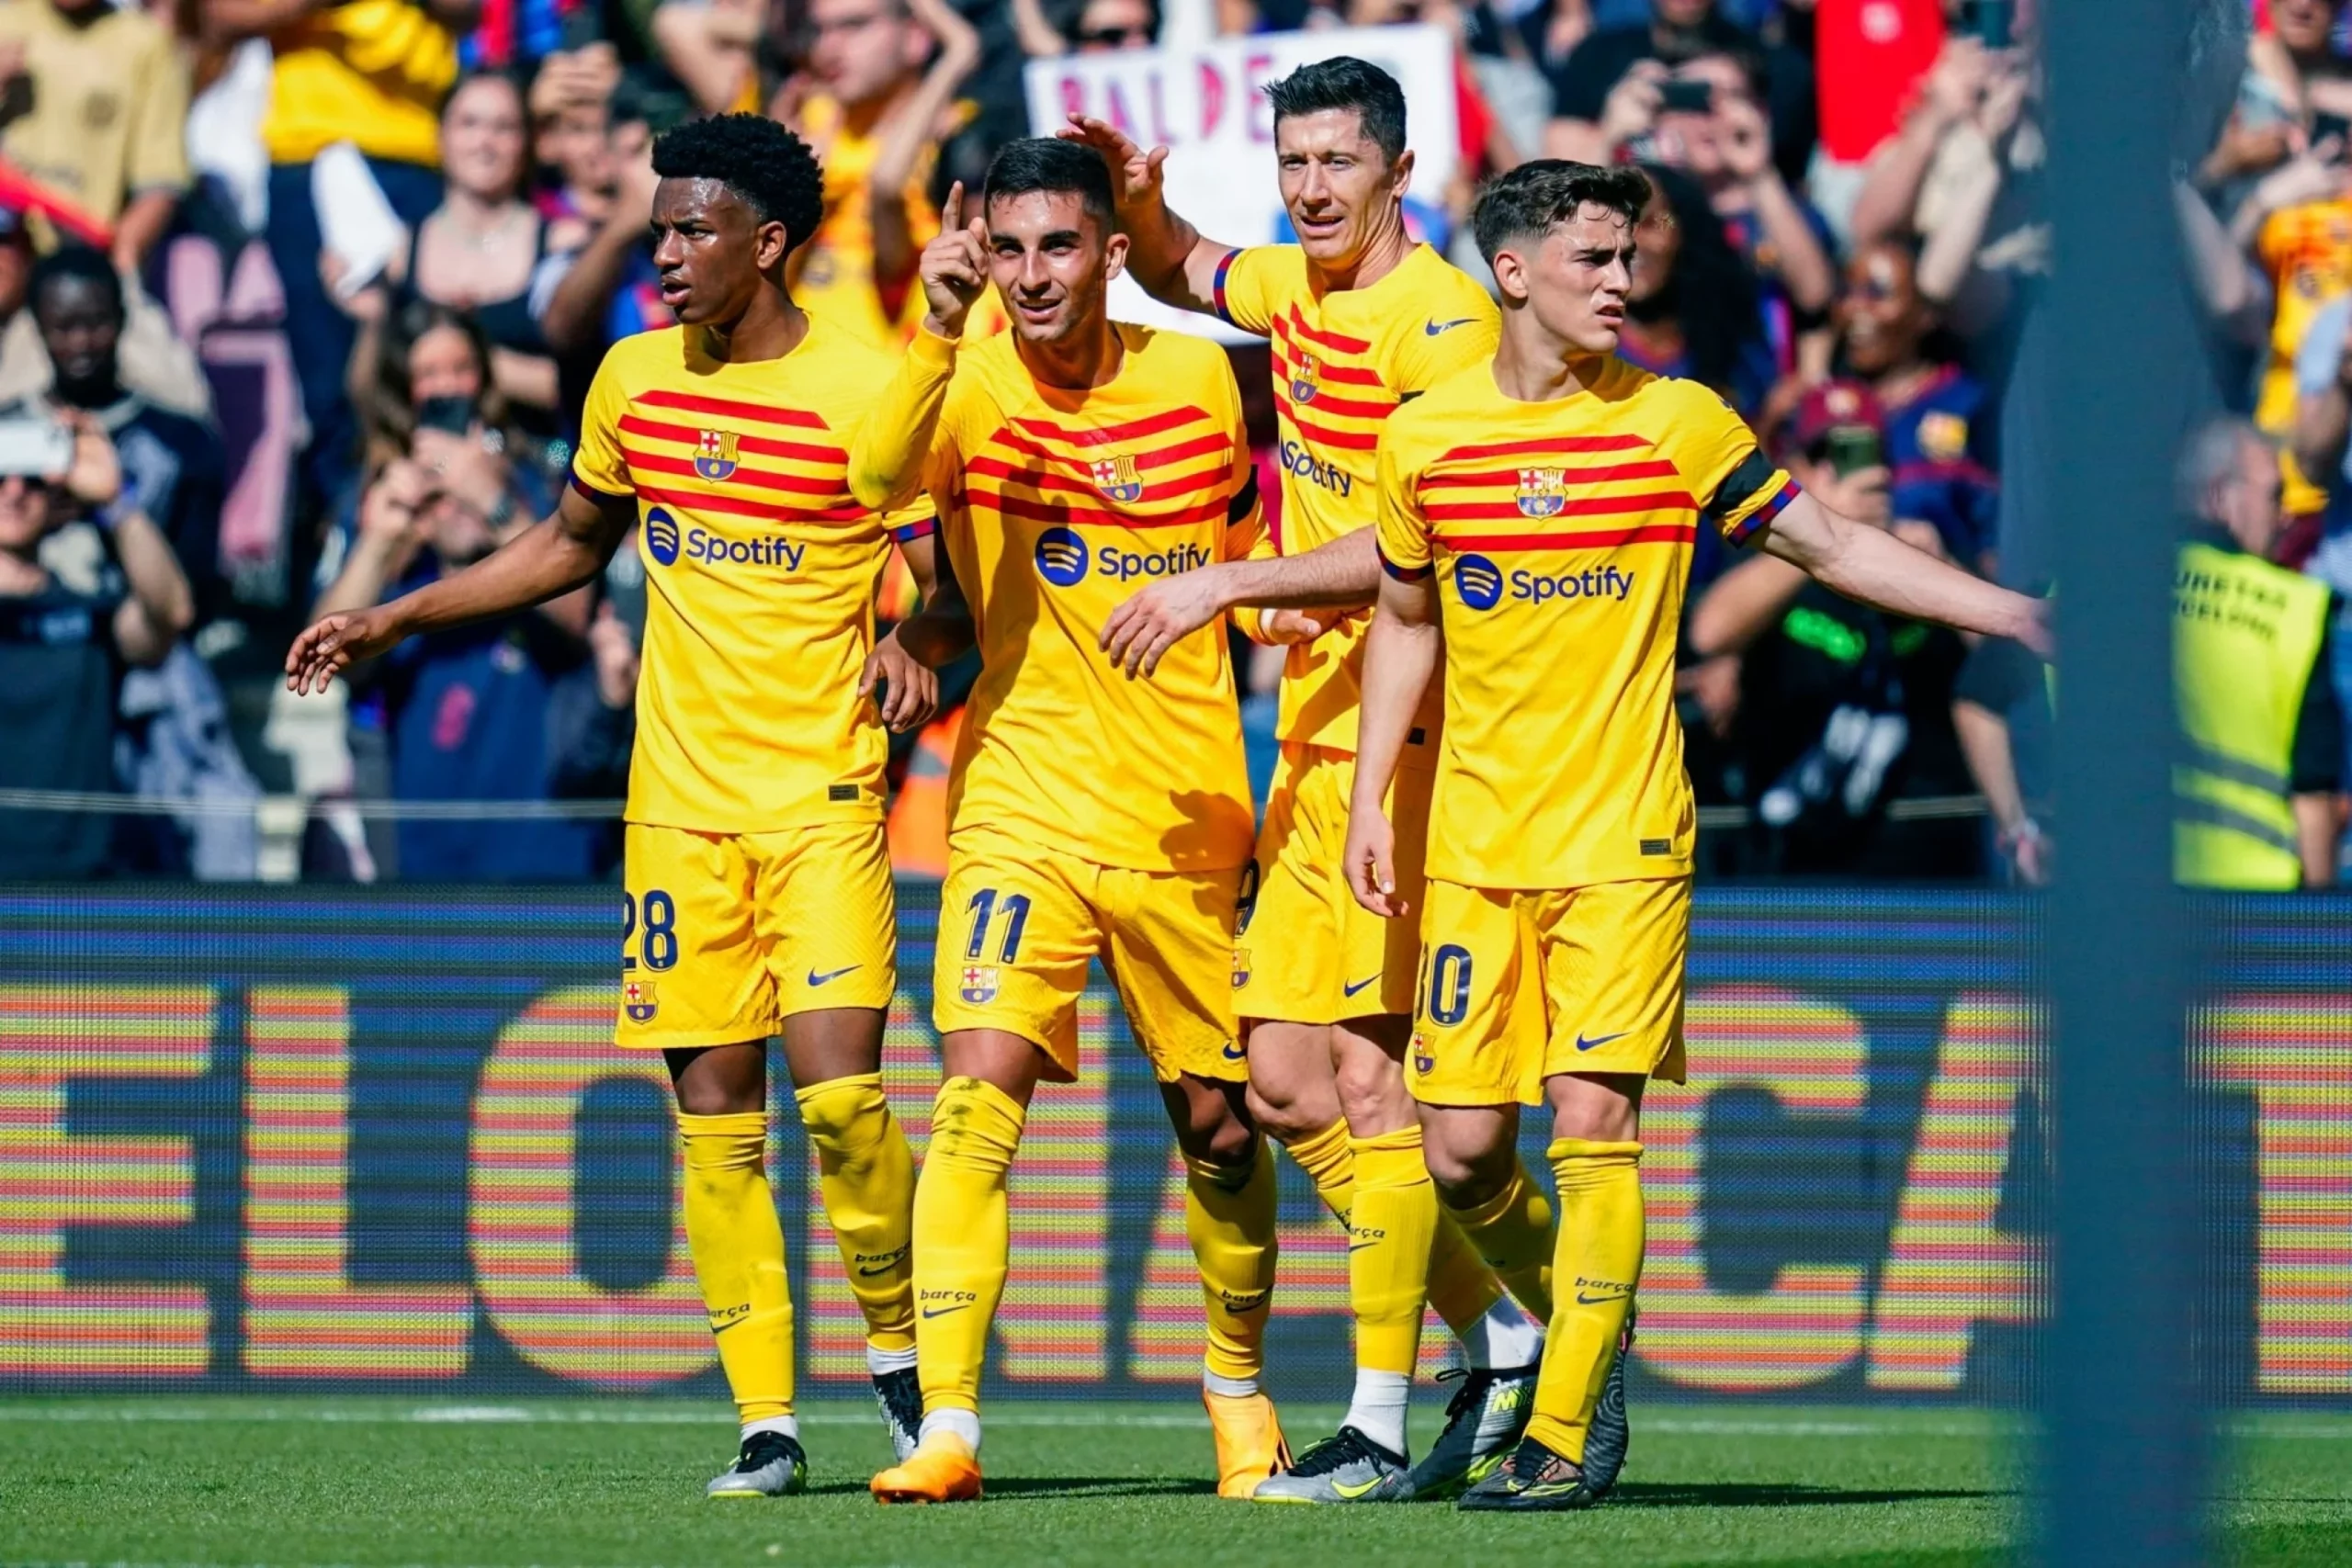 لأول مرة منذ ثمان سنوات، برشلونة يفوز على أتلتيكو ذهابا وإيابا